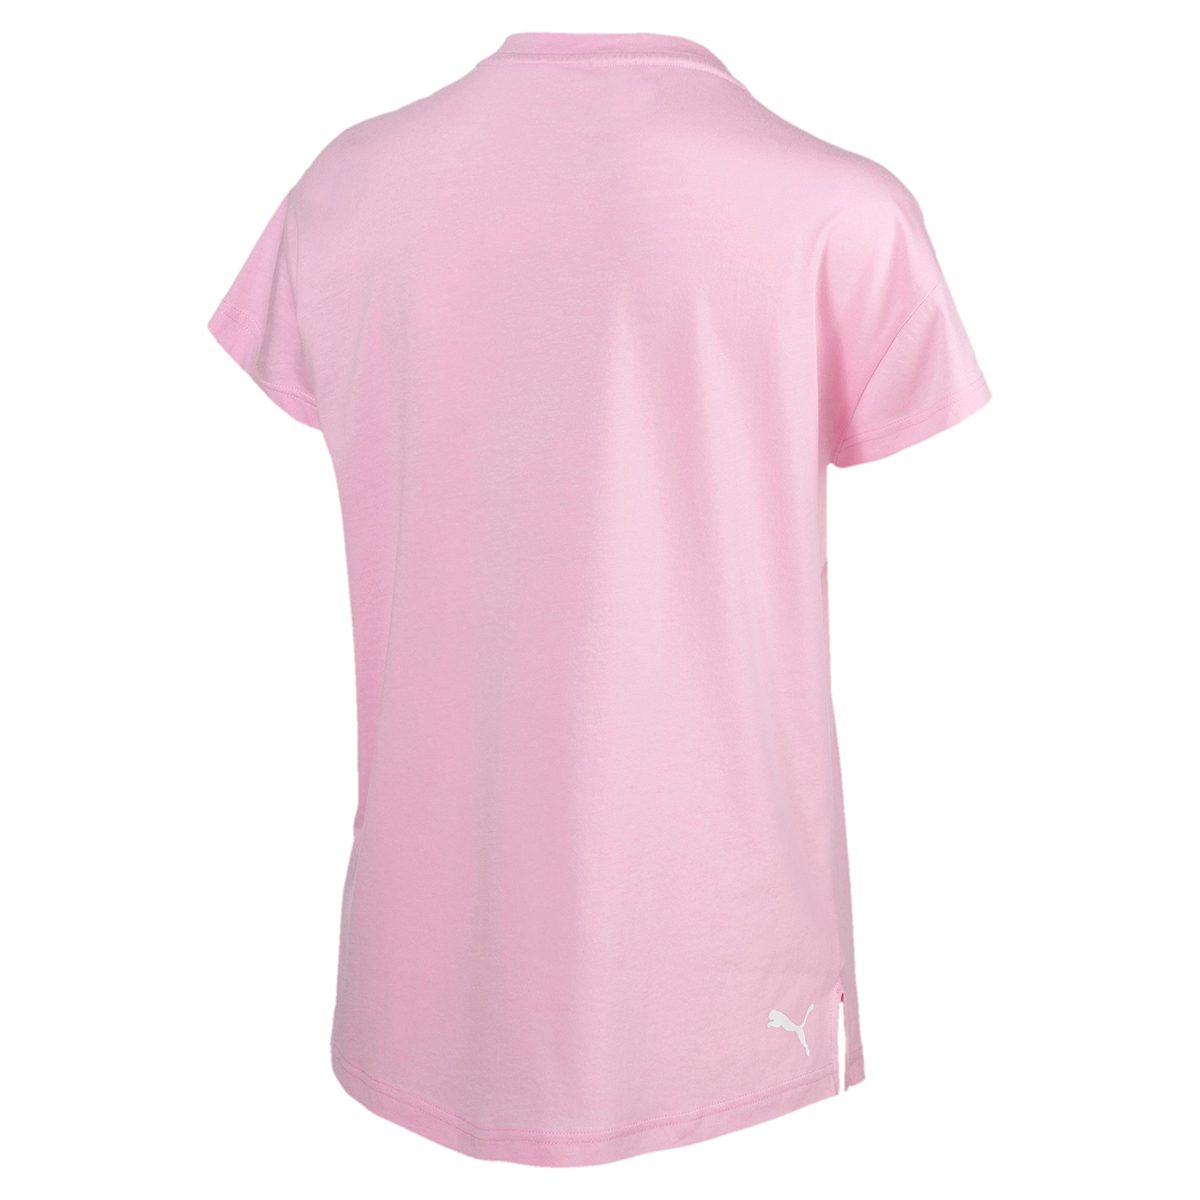 PUMA Damen Modern Sports Logo Tee DryCell T-Shirt pink 855188 21